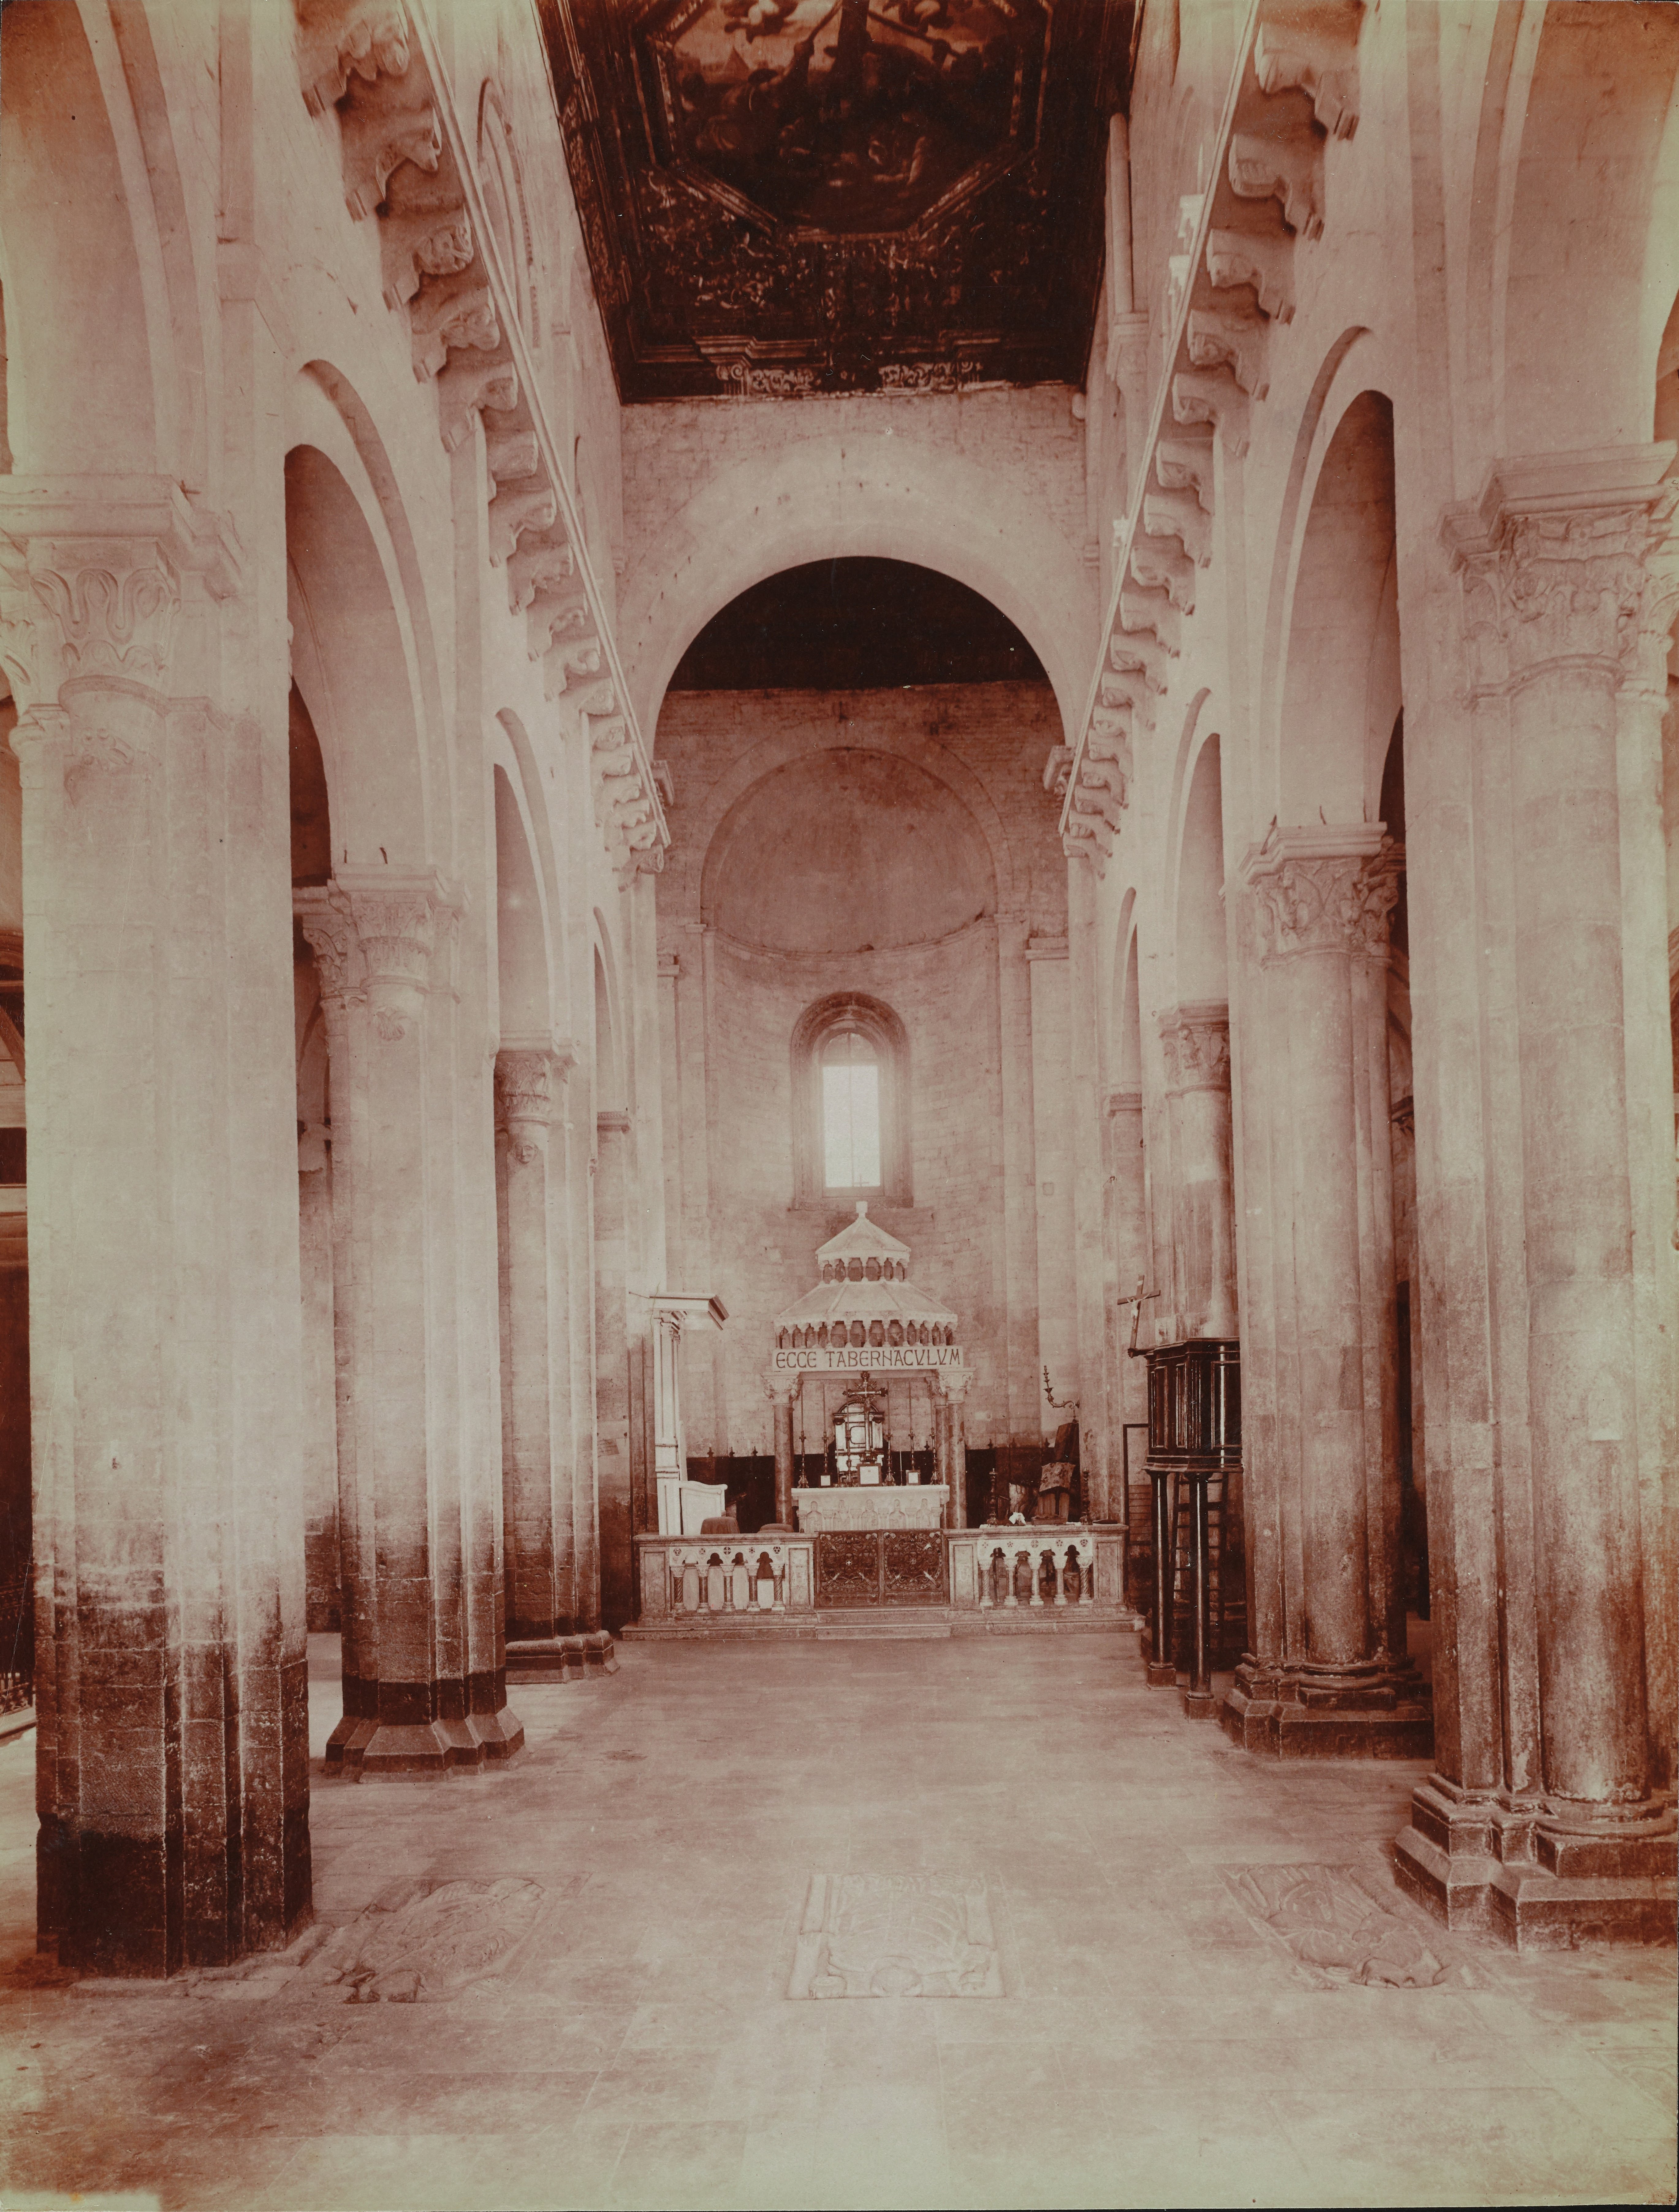 Fotografo non identificato, Ruvo di Puglia - Cattedrale S. Maria Assunta, interno, la navata verso l'abside, 1901-1910, albumina, MPI6091666